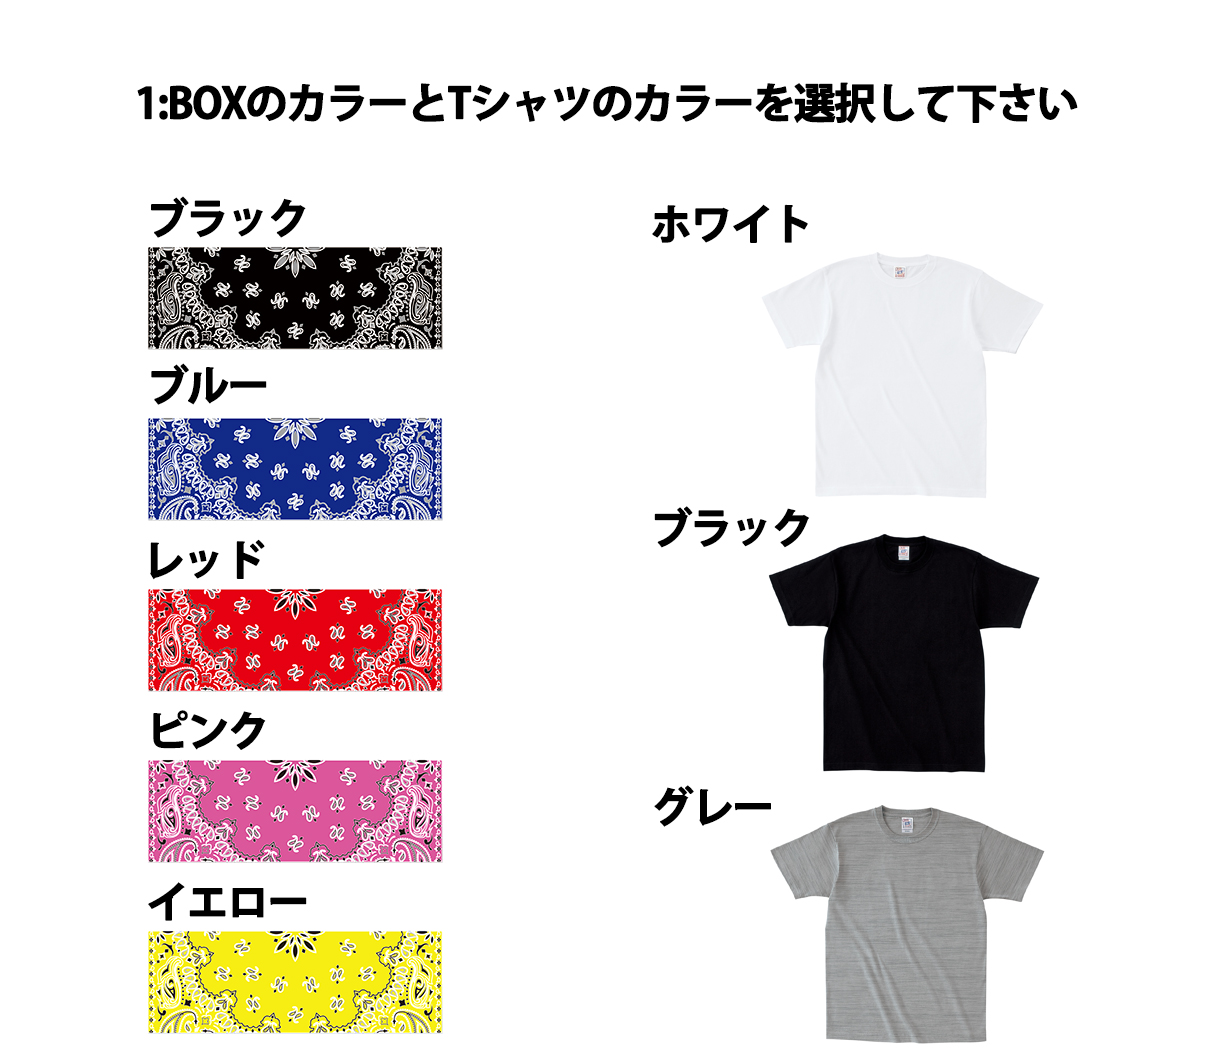 【楽天市場】一枚からOK オリジナル バンダナ BOX LOGO Tシャツ オリジナル オーダーメイド 名入れ 文字入れ ペイズリー